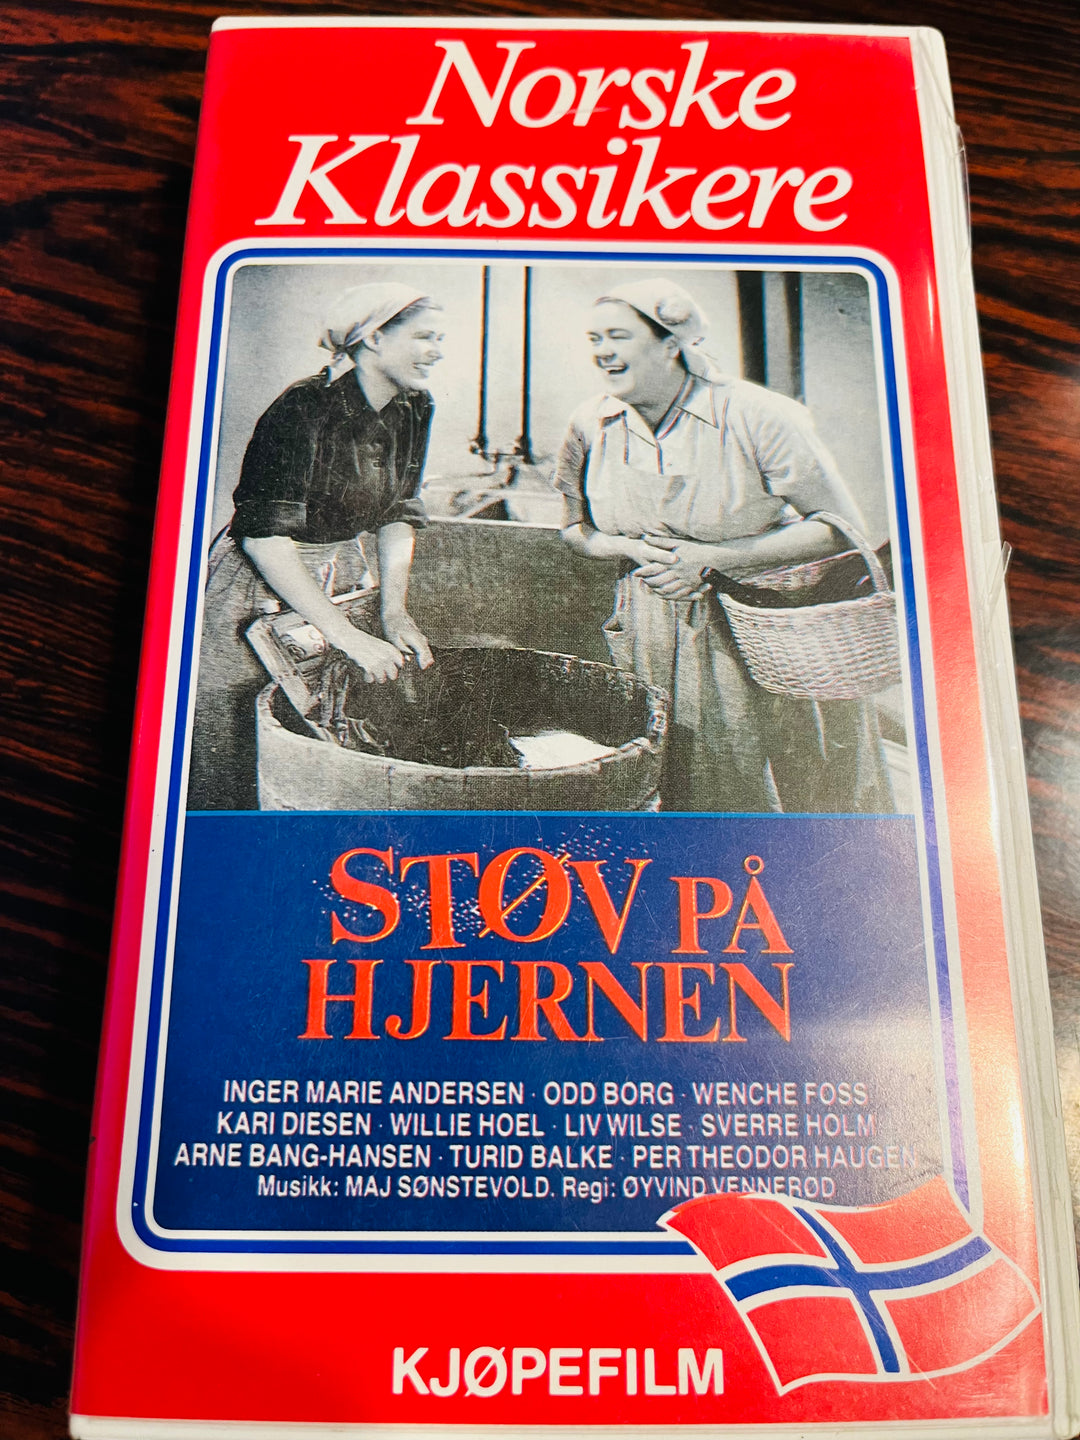 Støv på hjernen (Norske klassikere). 1959. VHS.